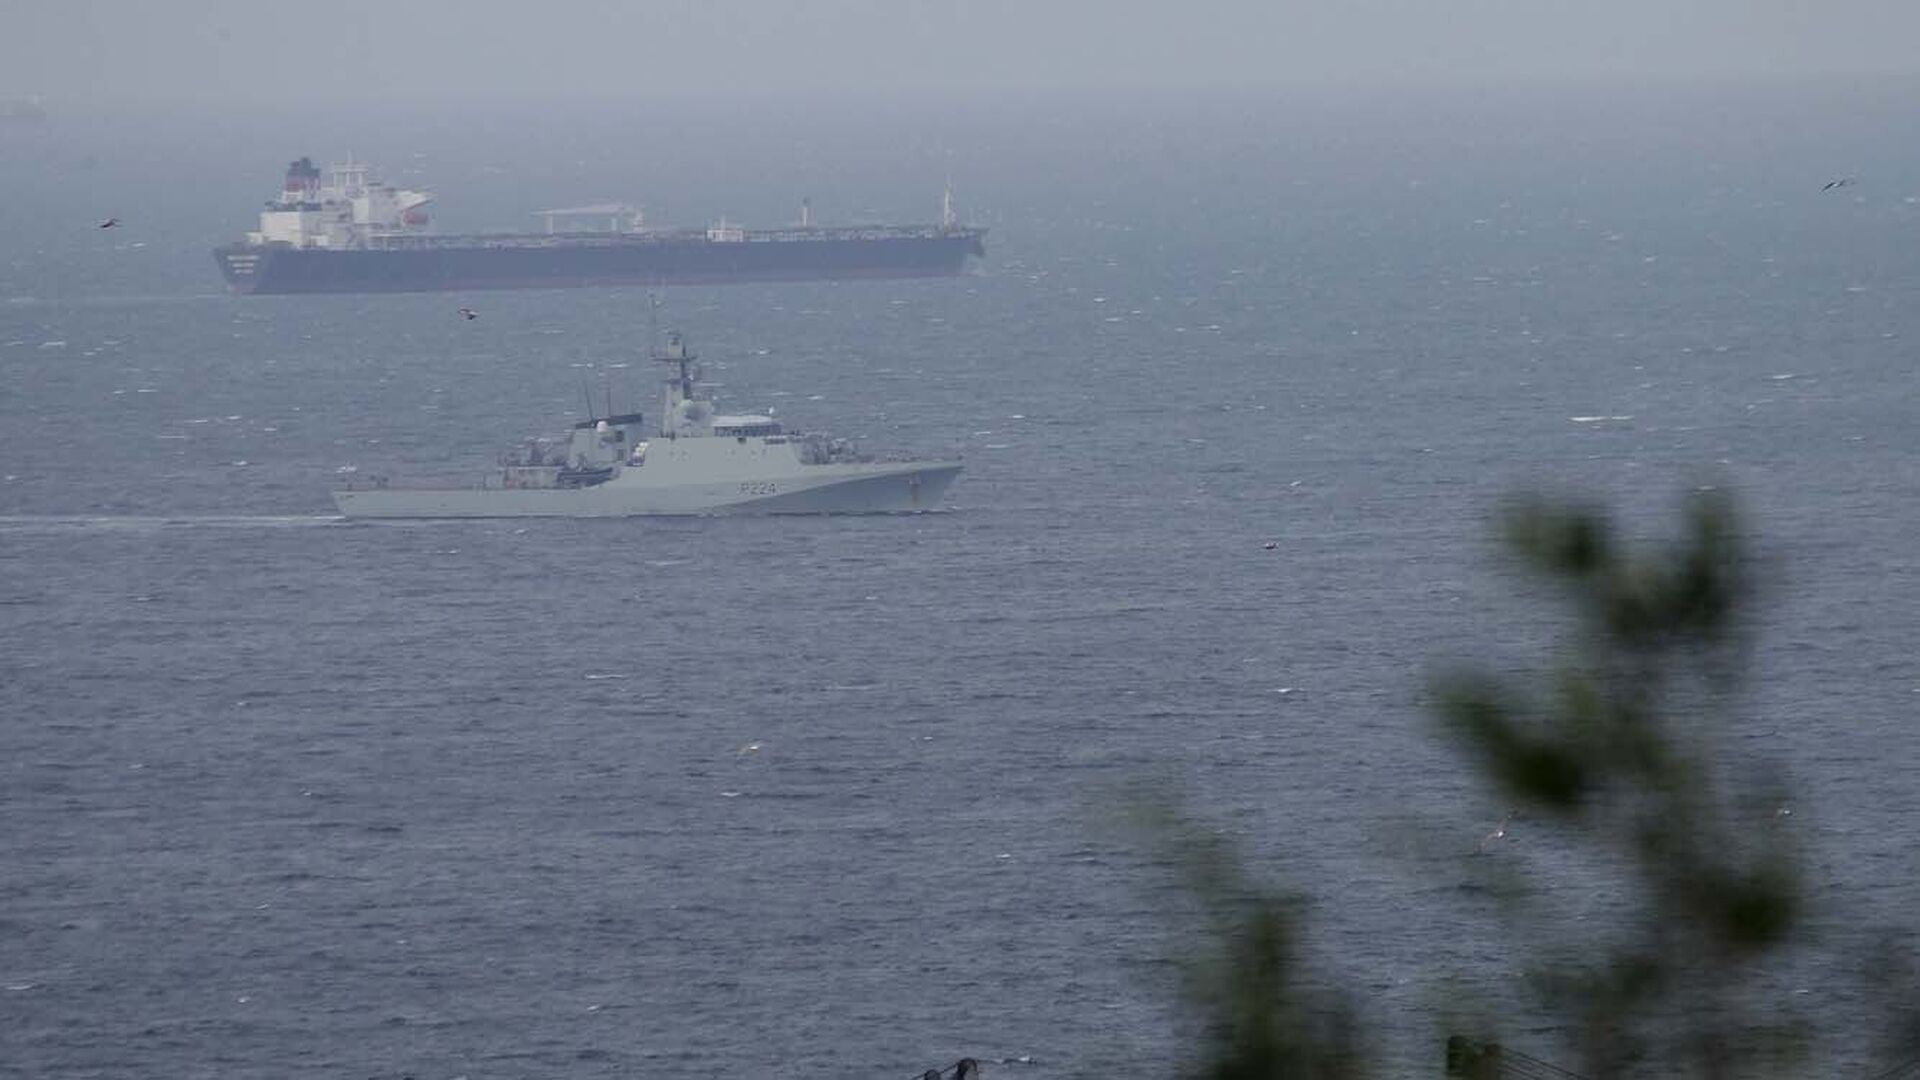 Las fotos del buque de guerra de la Royal Navy "HMS Trent" llegando a Gibraltar